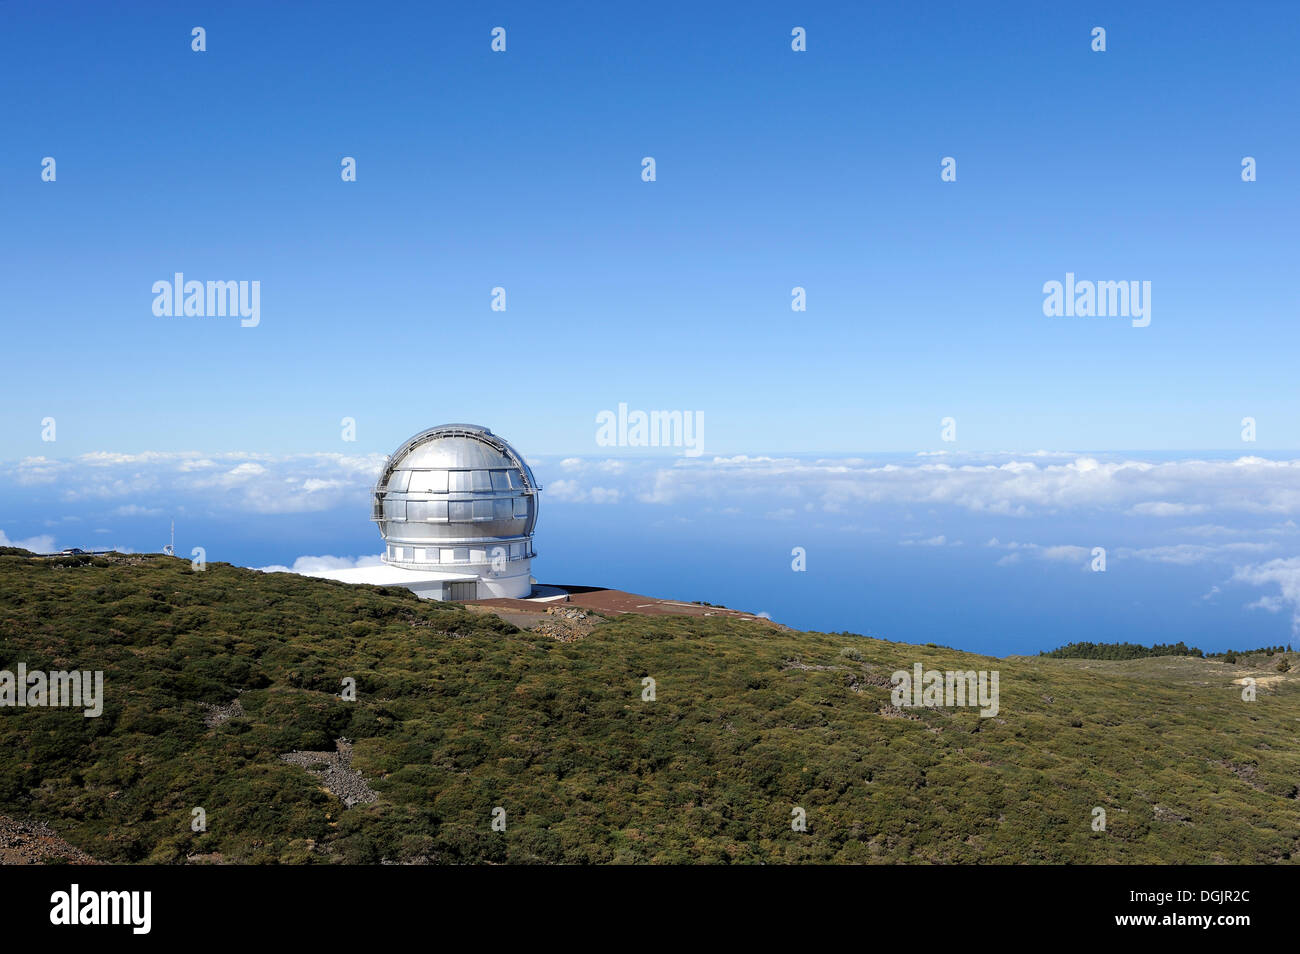 Astronomisches Observatorium auf dem Roque de Los Muchachos, Gran Telescopio Canarias, Teleskop, La Palma, Kanarische Inseln, Spanien Stockfoto